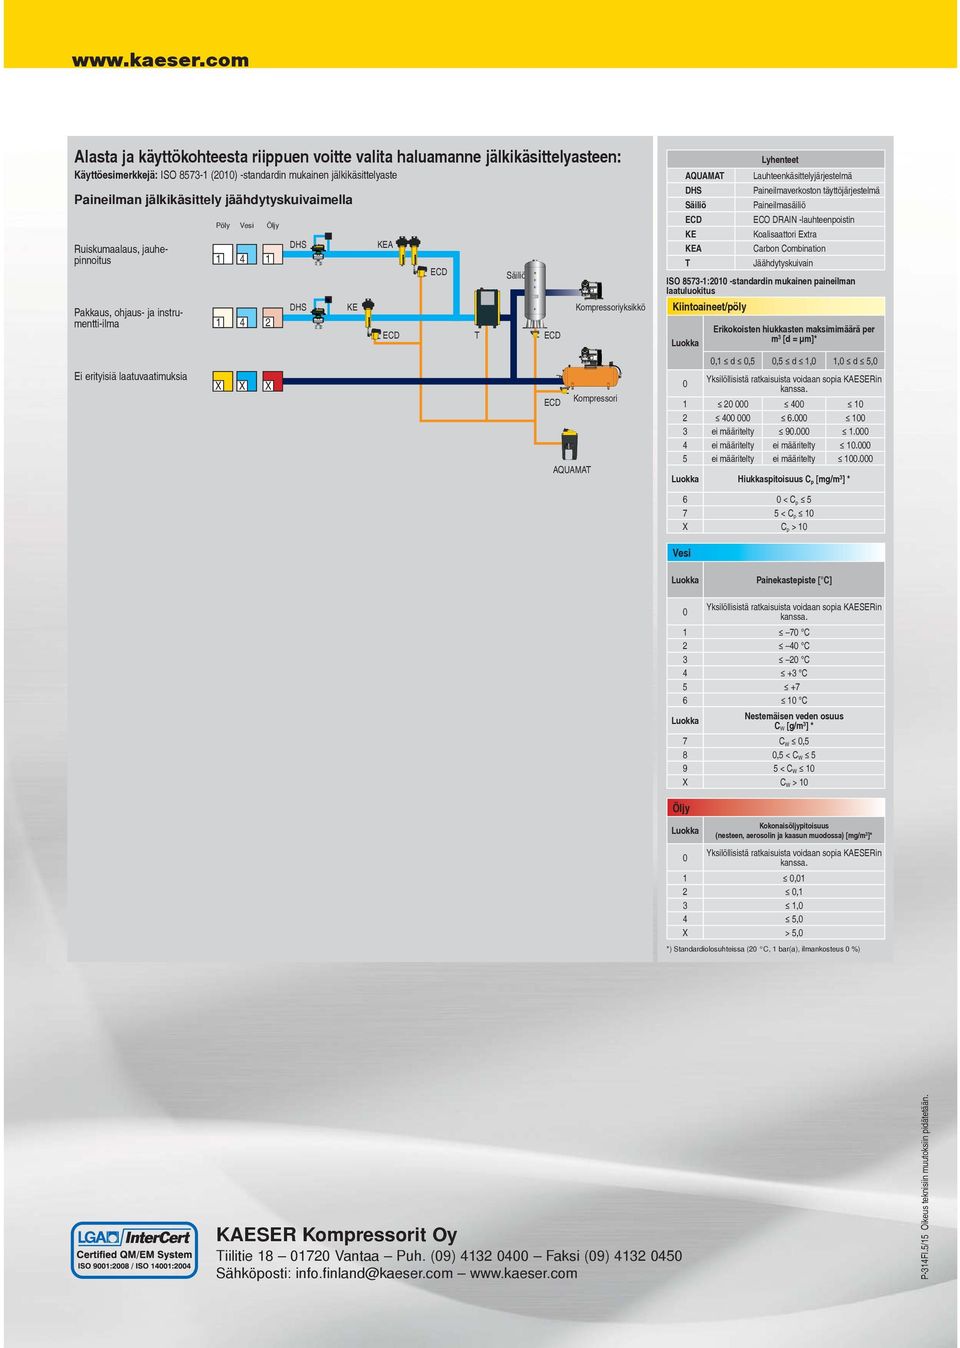 Kompressoriyksikkö Kompressori AQUAMAT DHS Säiliö KE KEA T Kiintoaineet/pöly Lyhenteet Lauhteenkäsittelyjärjestelmä Paineilmaverkoston täyttöjärjestelmä Paineilmasäiliö ECO DRAIN -lauhteenpoistin